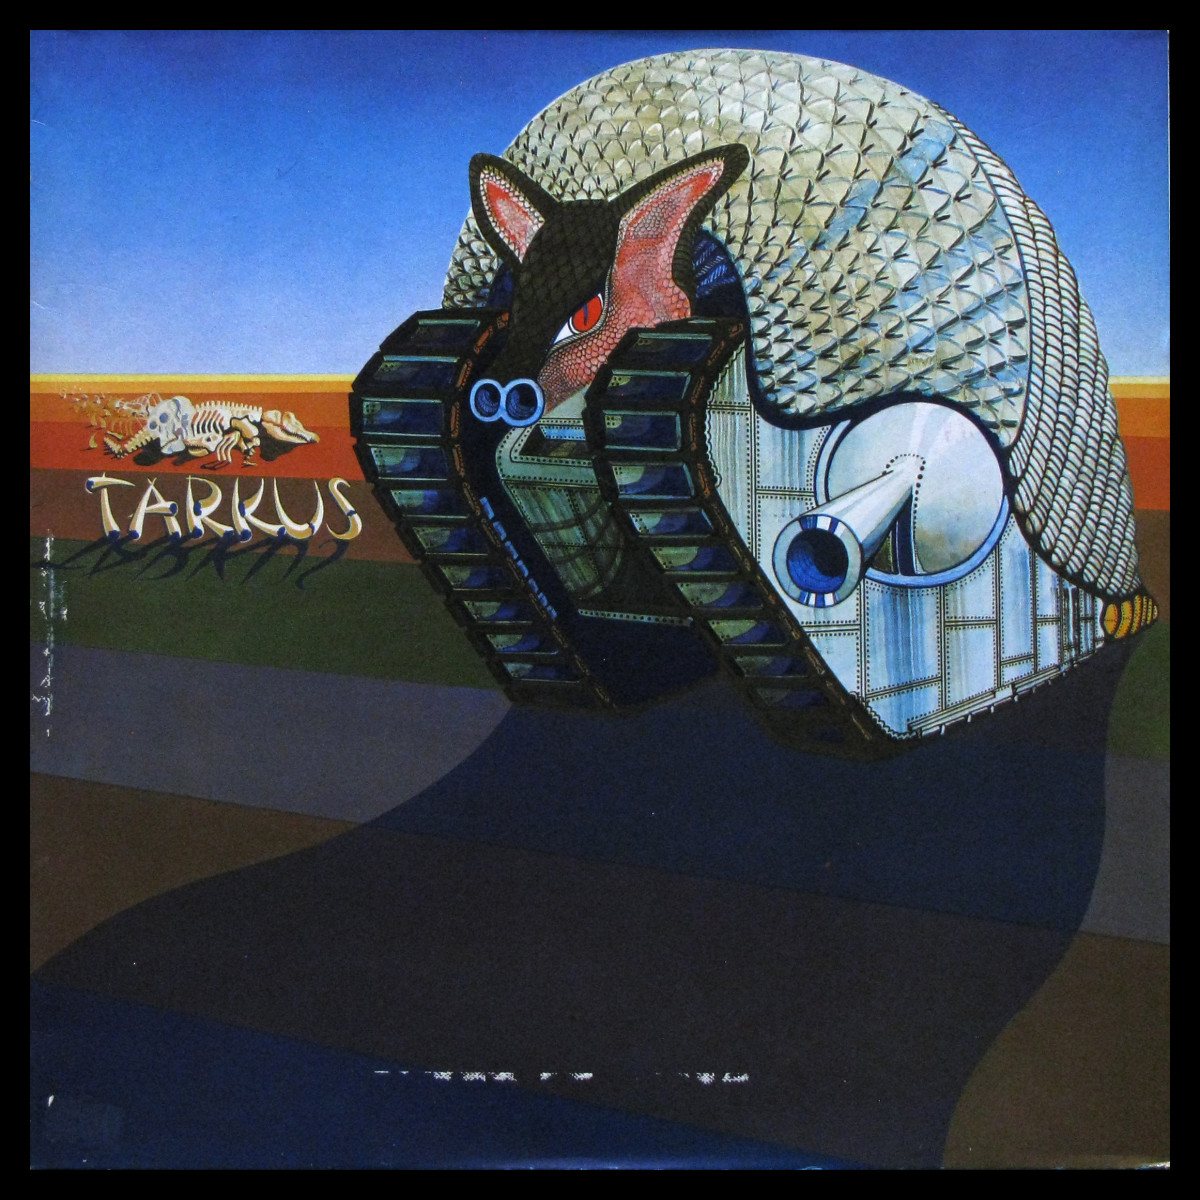 LP Emerson, Lake & Palmer — Tarkus фото